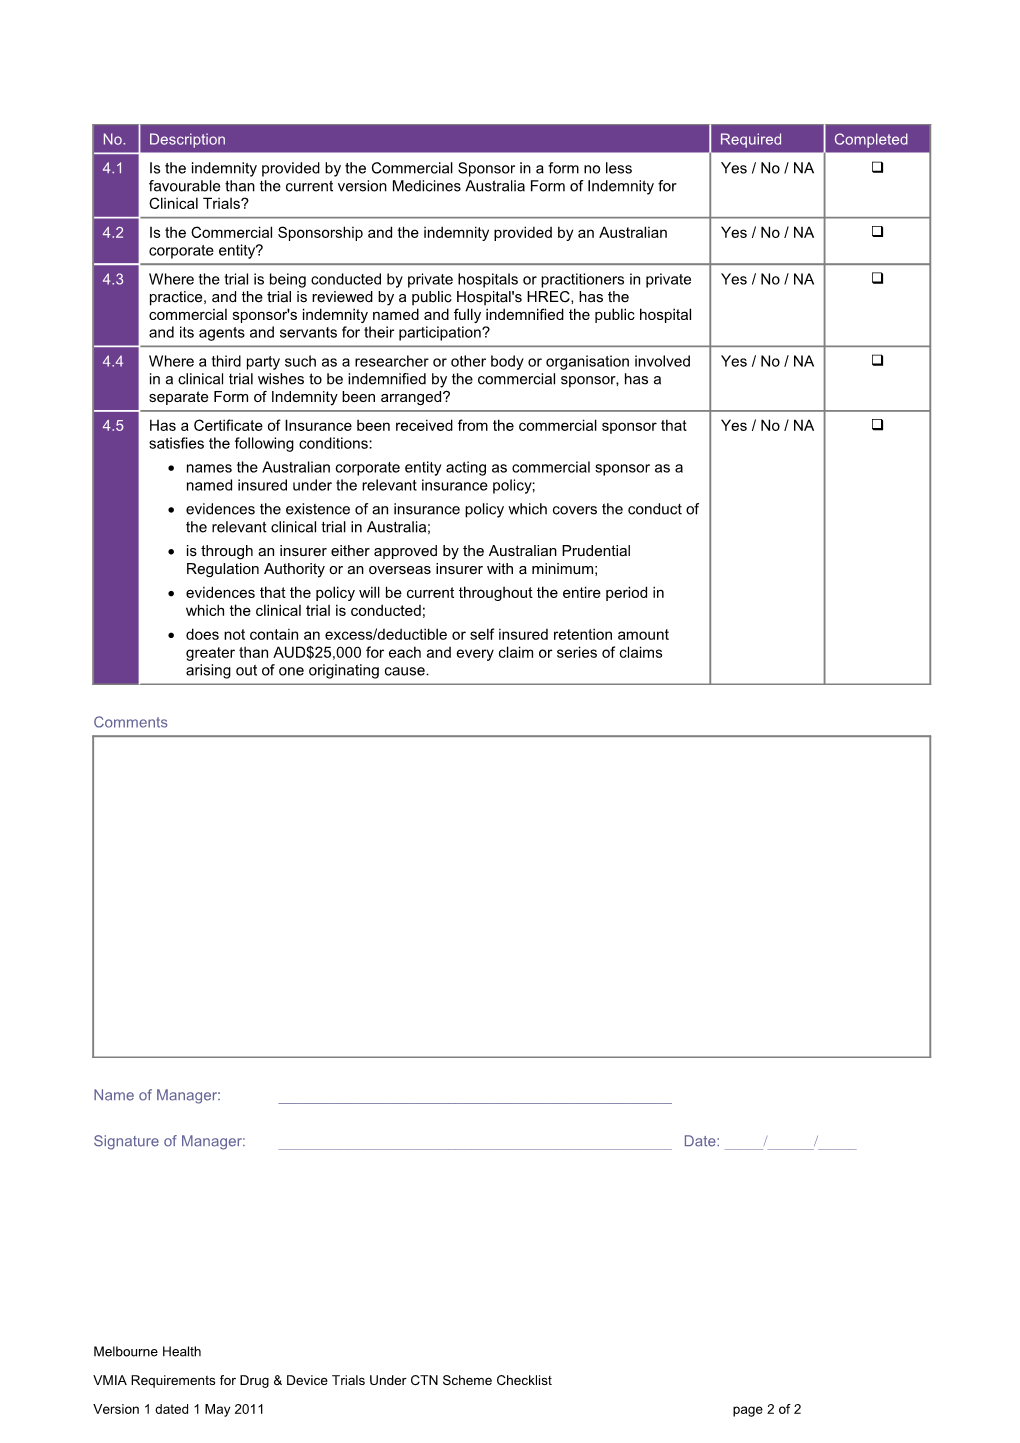 VMIA Requirements for Drug & Device Trials Under CTN Scheme Checklist Continued